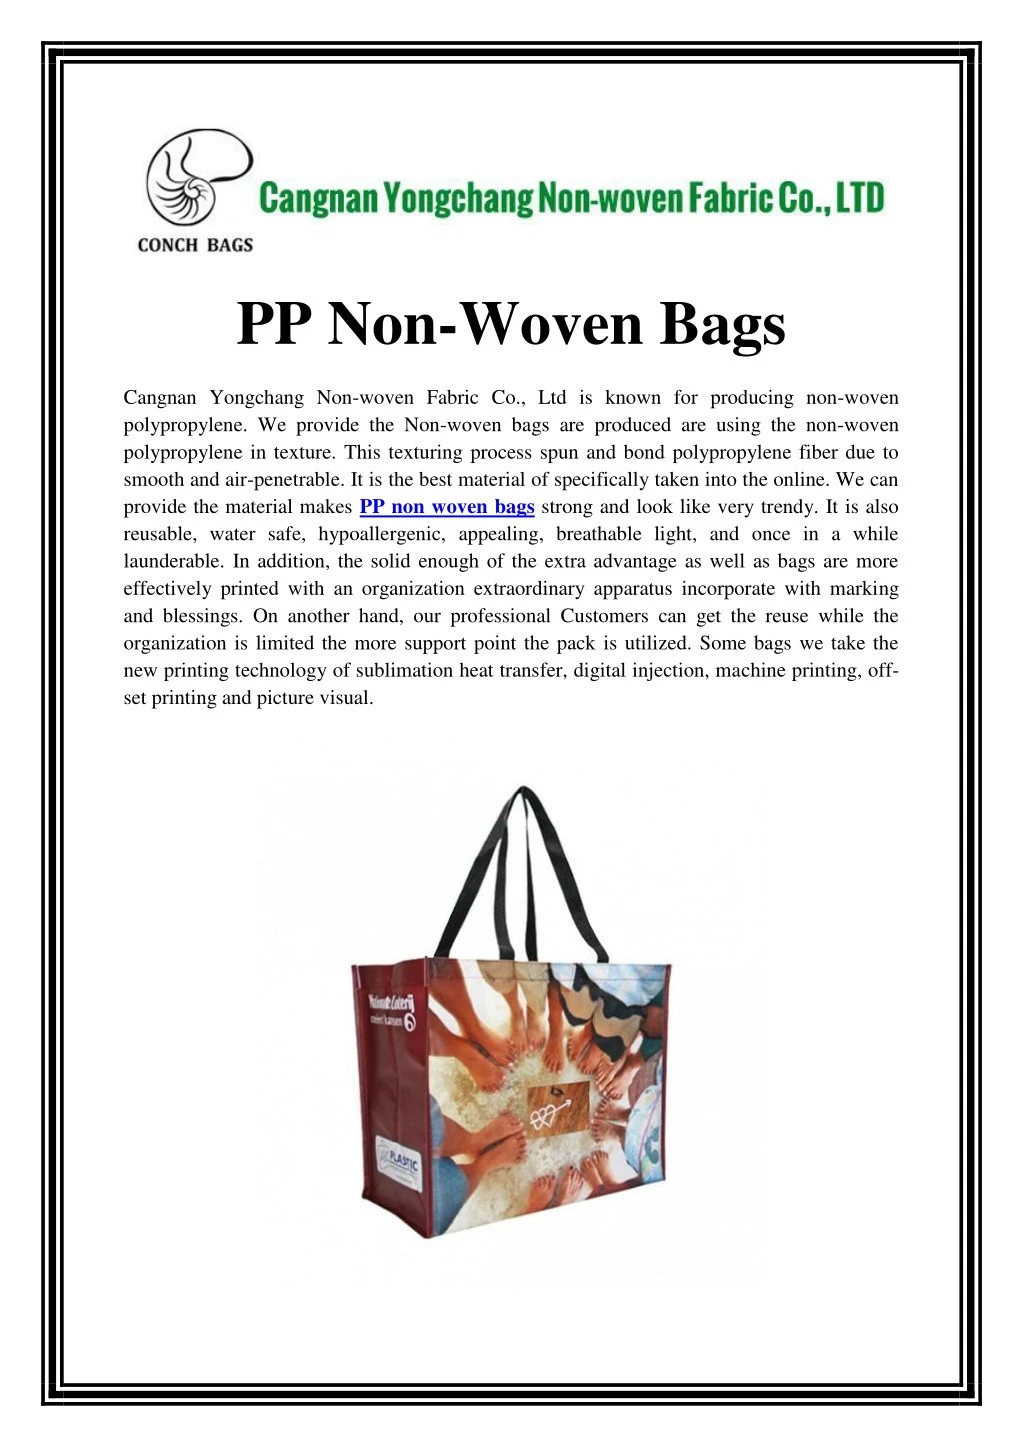 pp non woven bags